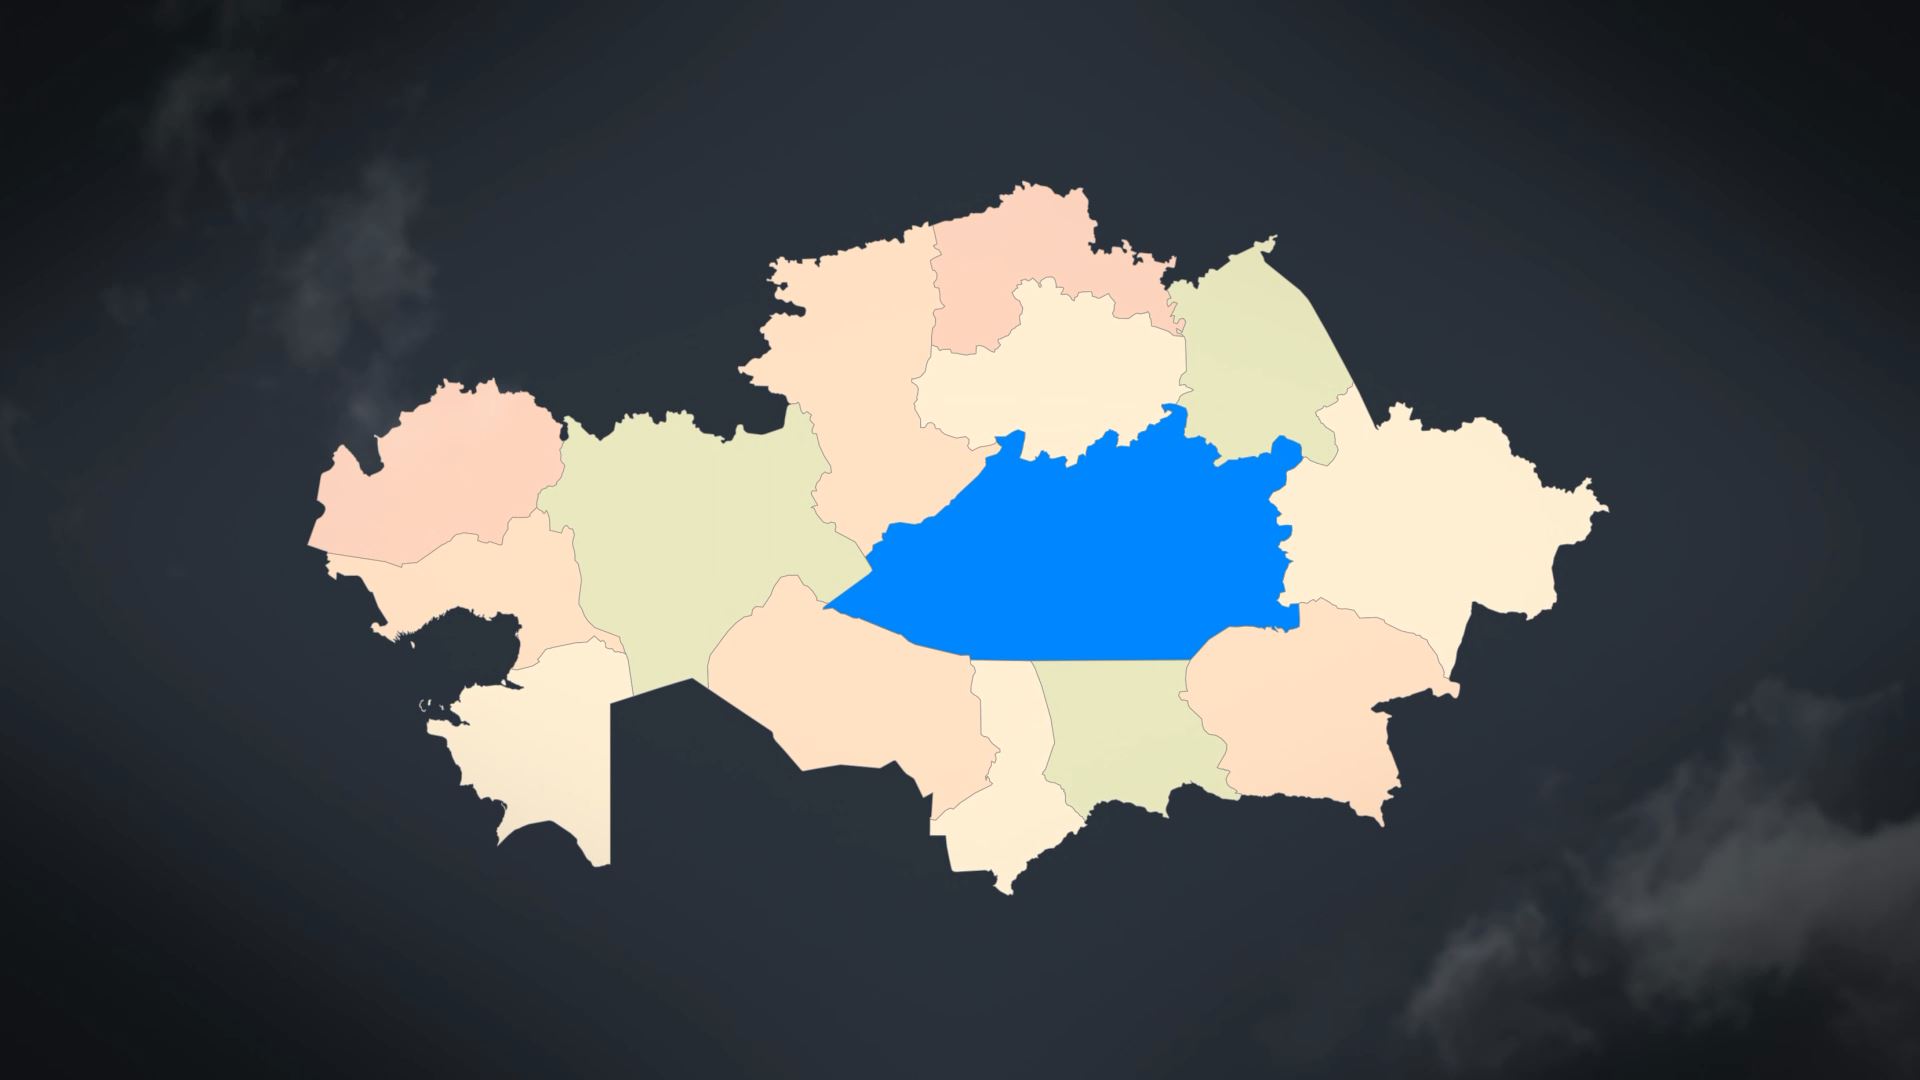  Kazakhstan Map - Republic of Kazakhstan Map Kit 